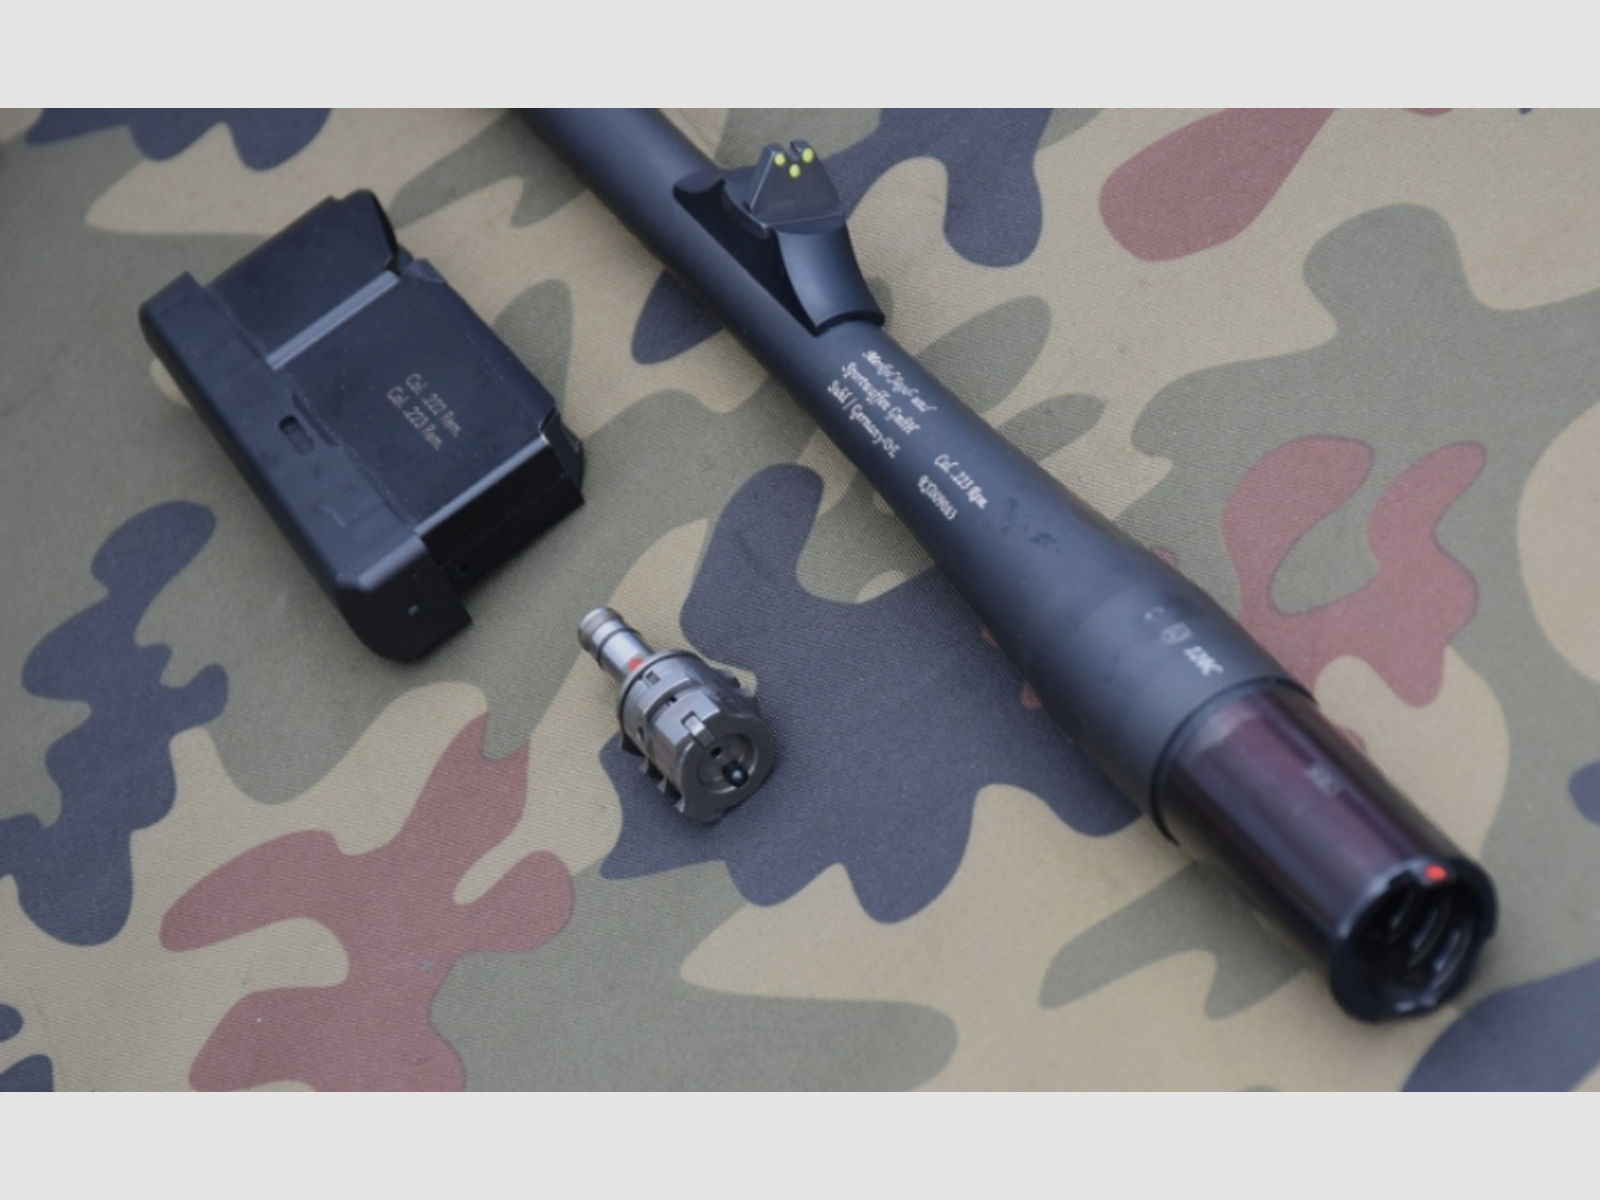 Austauschlauf Merkel RX Helix Kaliber .223 Remington mit passendem Verschlusskopf und Magazin TOP!